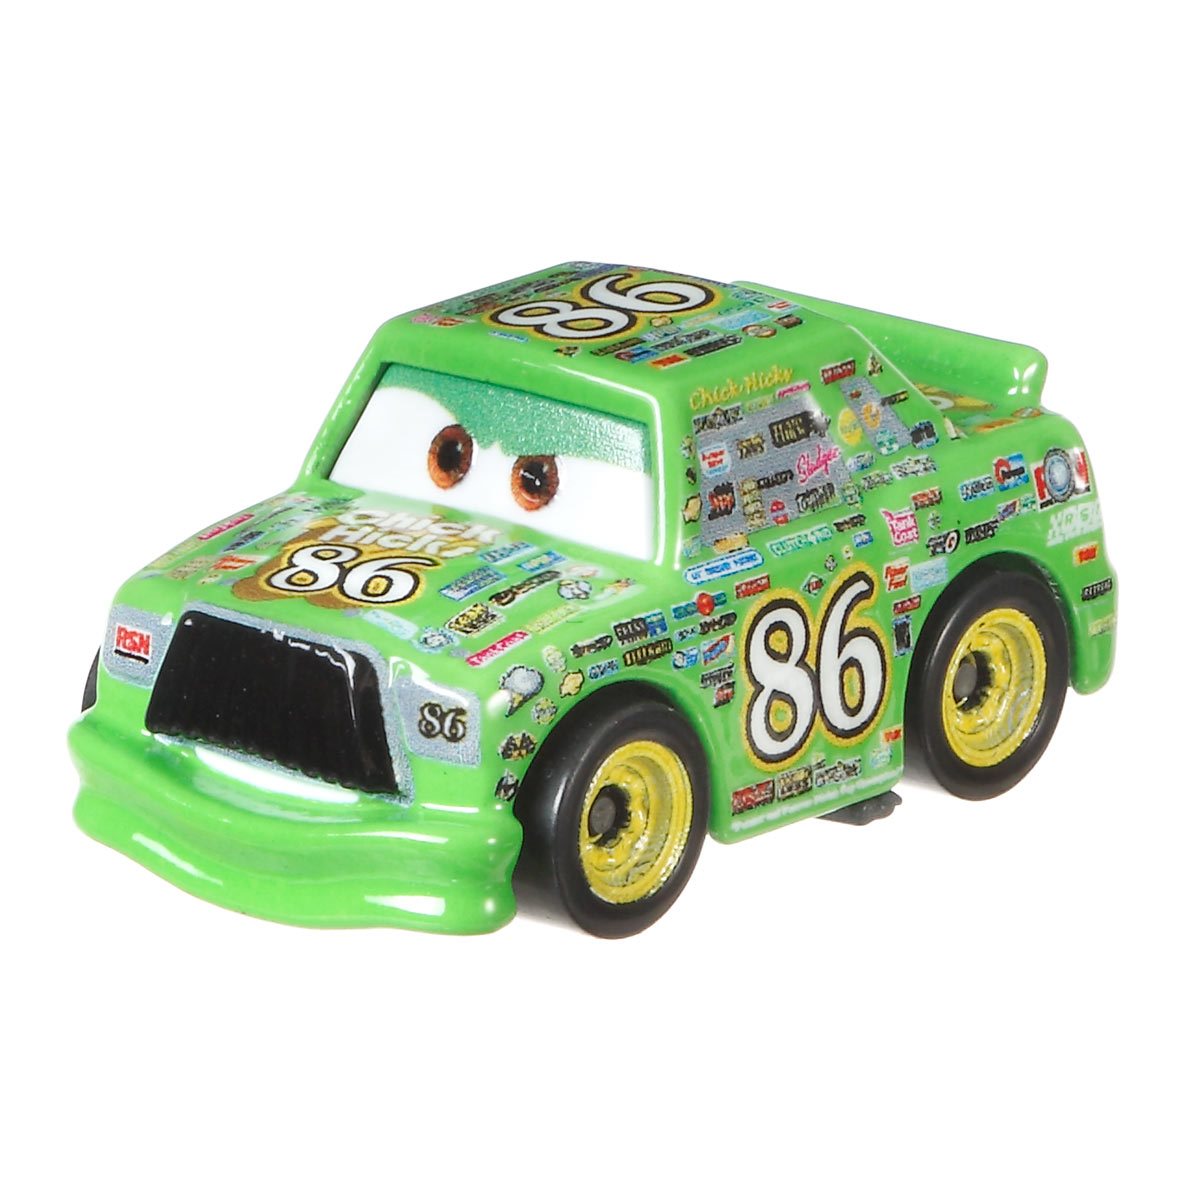 Машинка Mattel cars мини гонщики. Машинка Mattel cars Базовая мини-гонщик в блистере gkf65-963d. Мини гонщик. Коллекция Тачки мини.